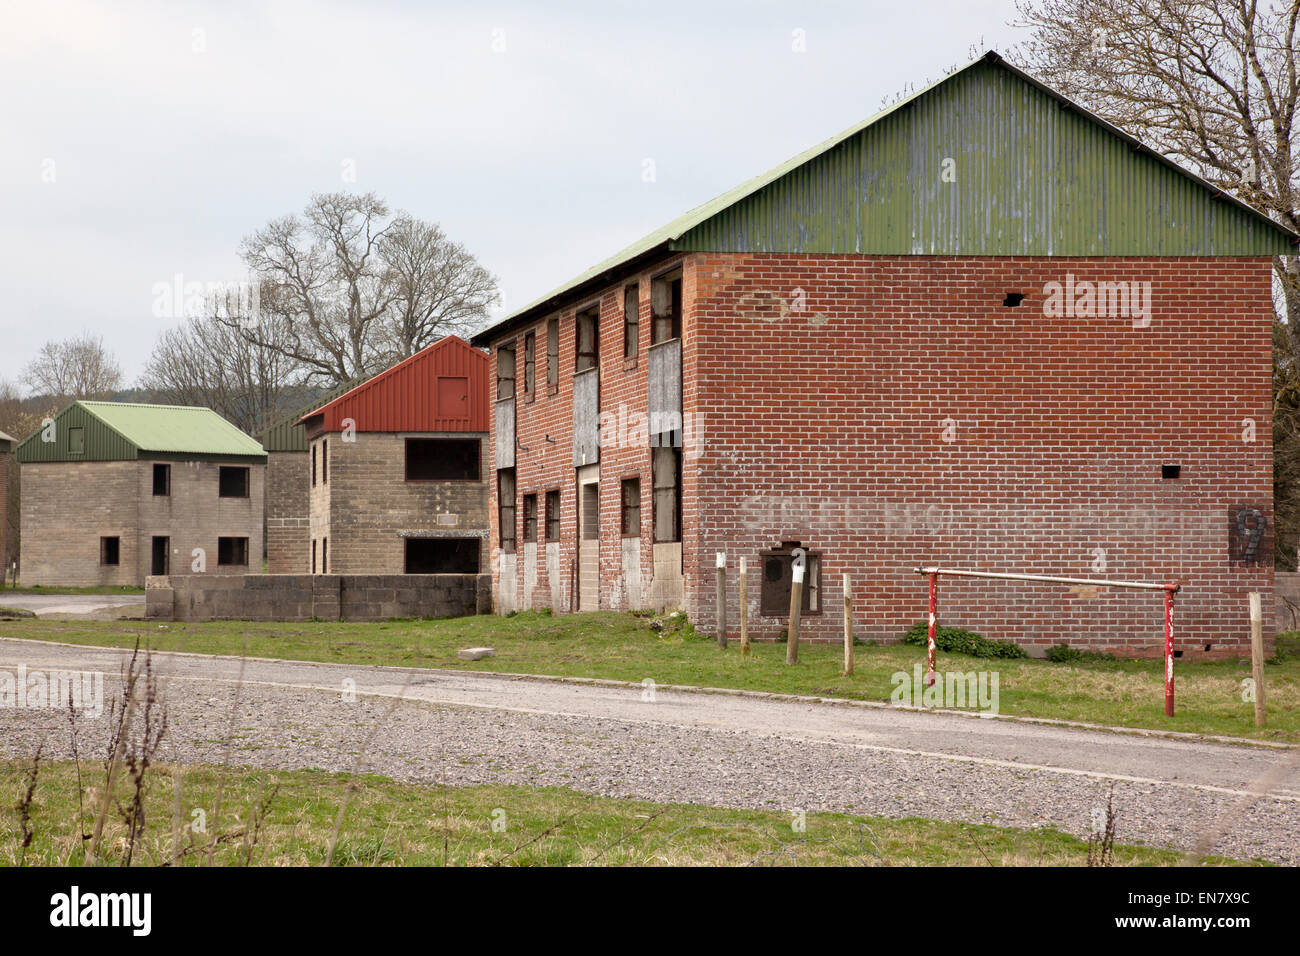 Village militaire déserté d'Imber, Salisbury Plain, Wiltshire, Angleterre, Royaume-Uni Banque D'Images